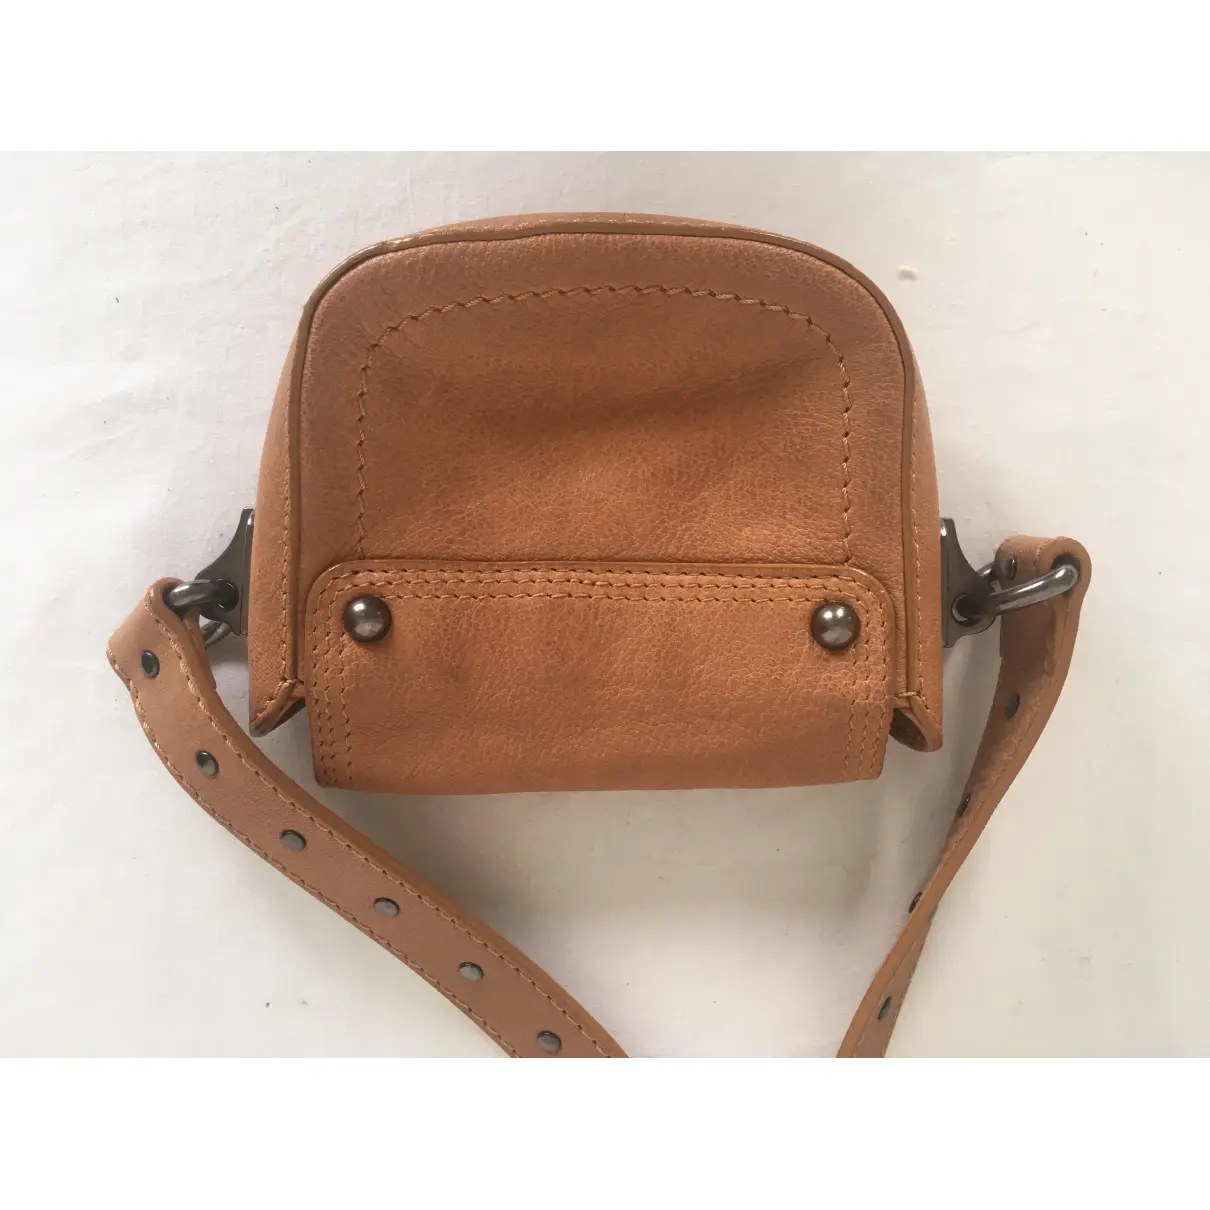 Buy Celine Leather clutch bag online - Vintage